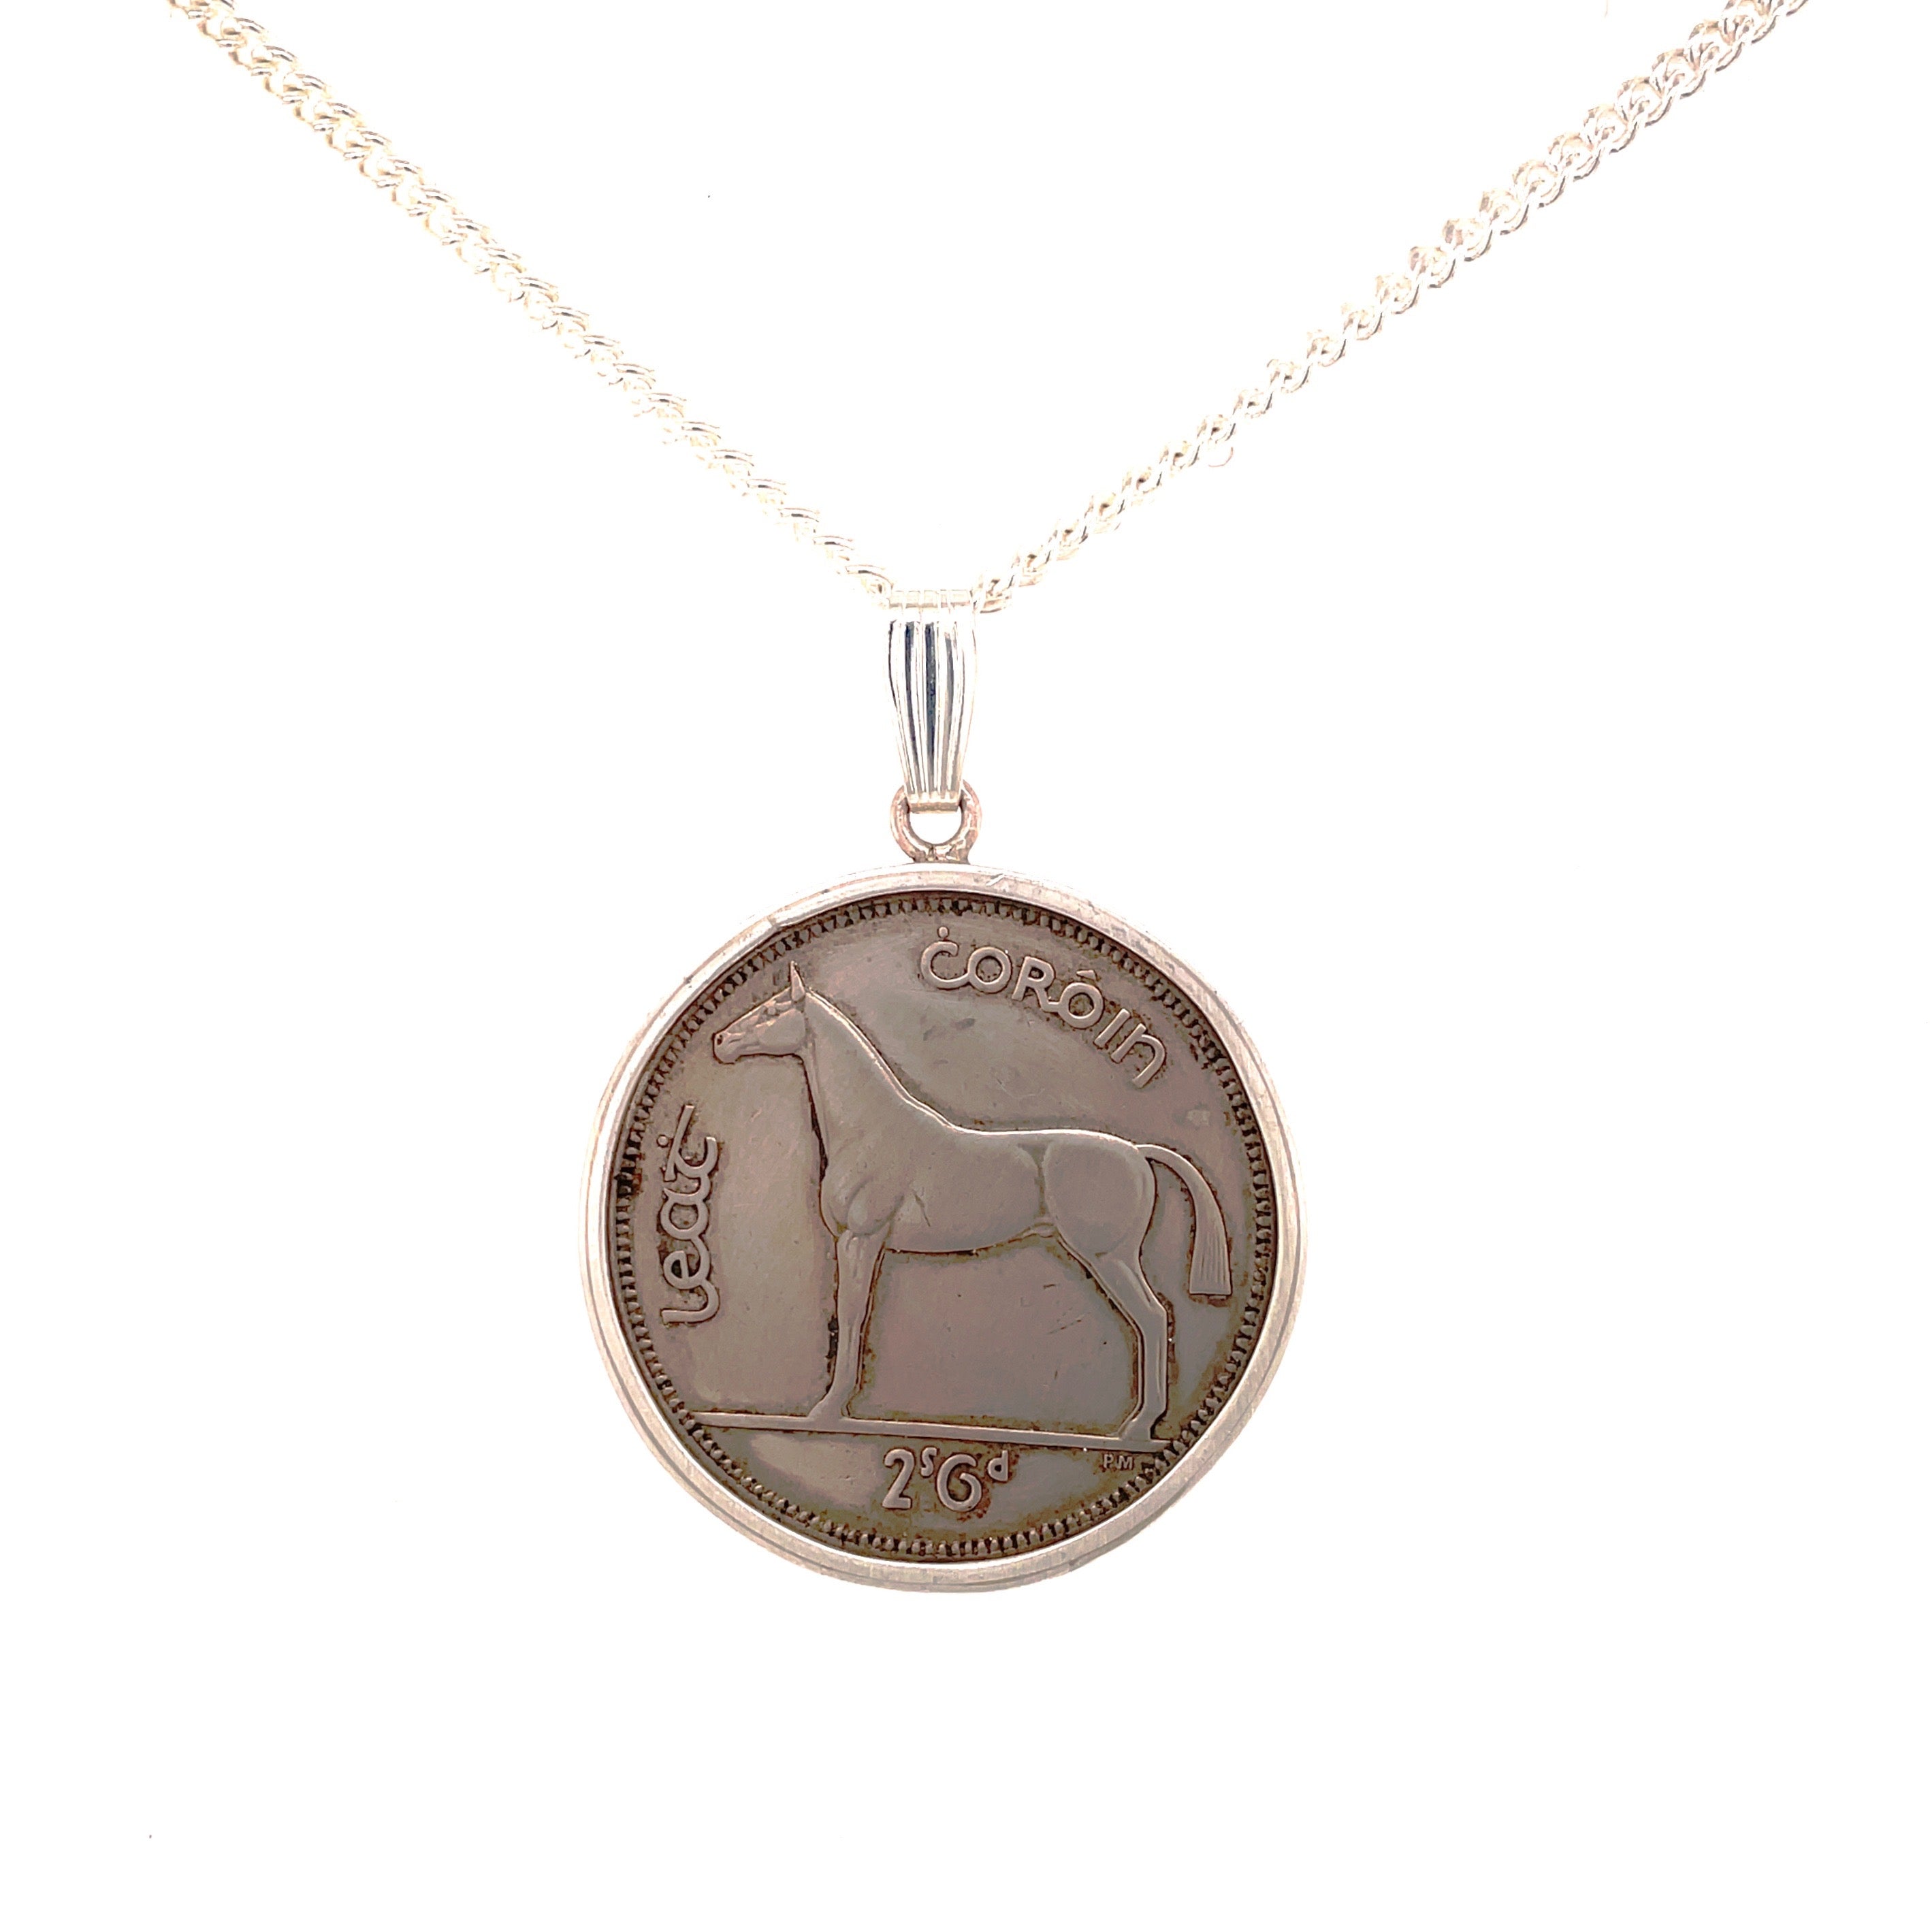 2'6 horse coin necklace